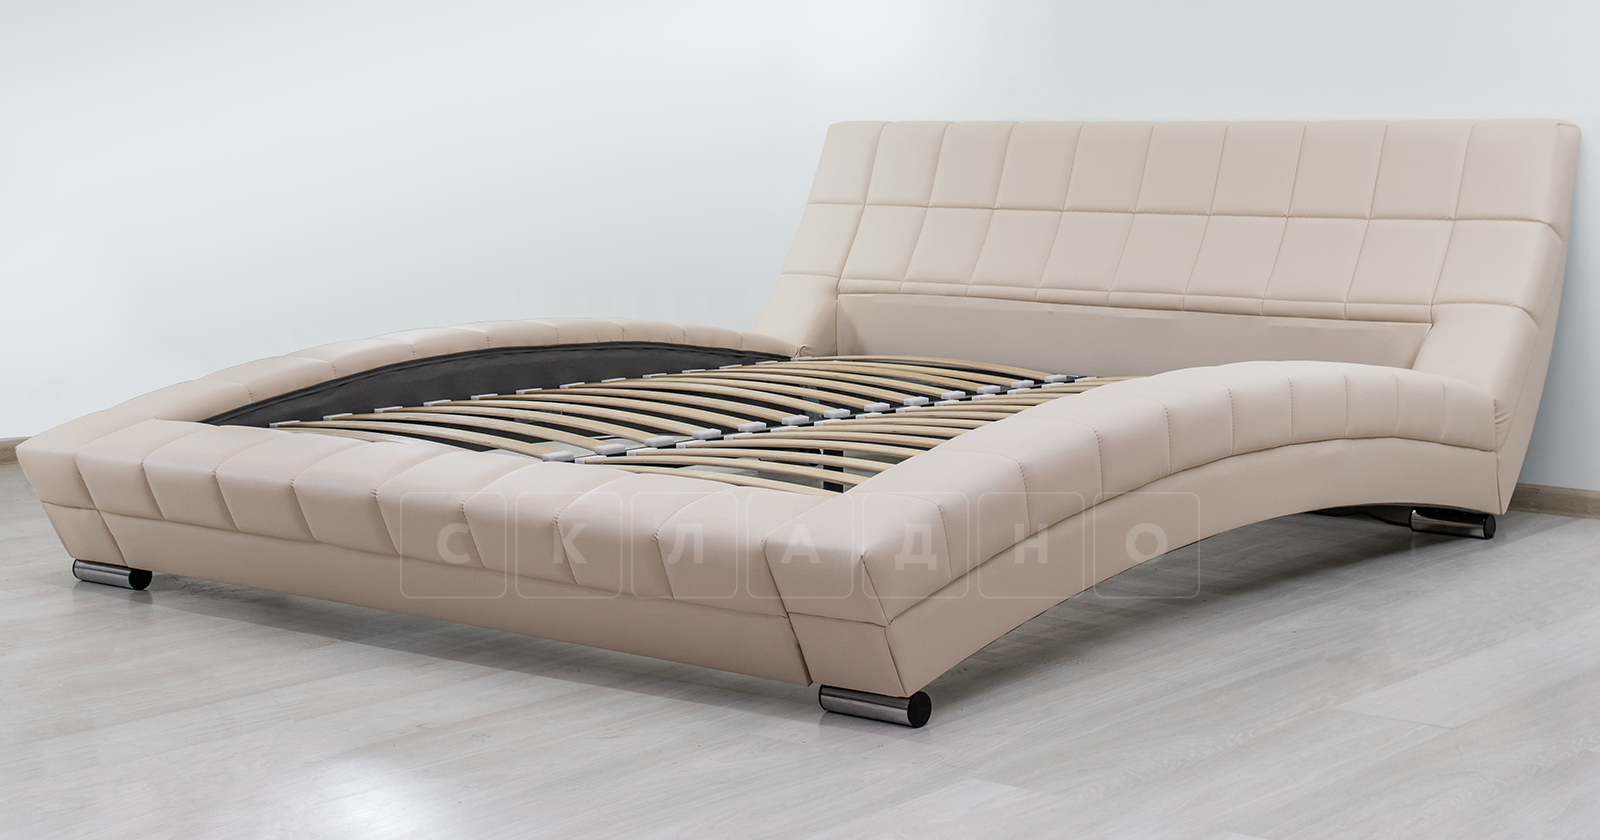 Мягкая кровать Оливия 160 см экокожа бежевый фото 4 | интернет-магазин Складно